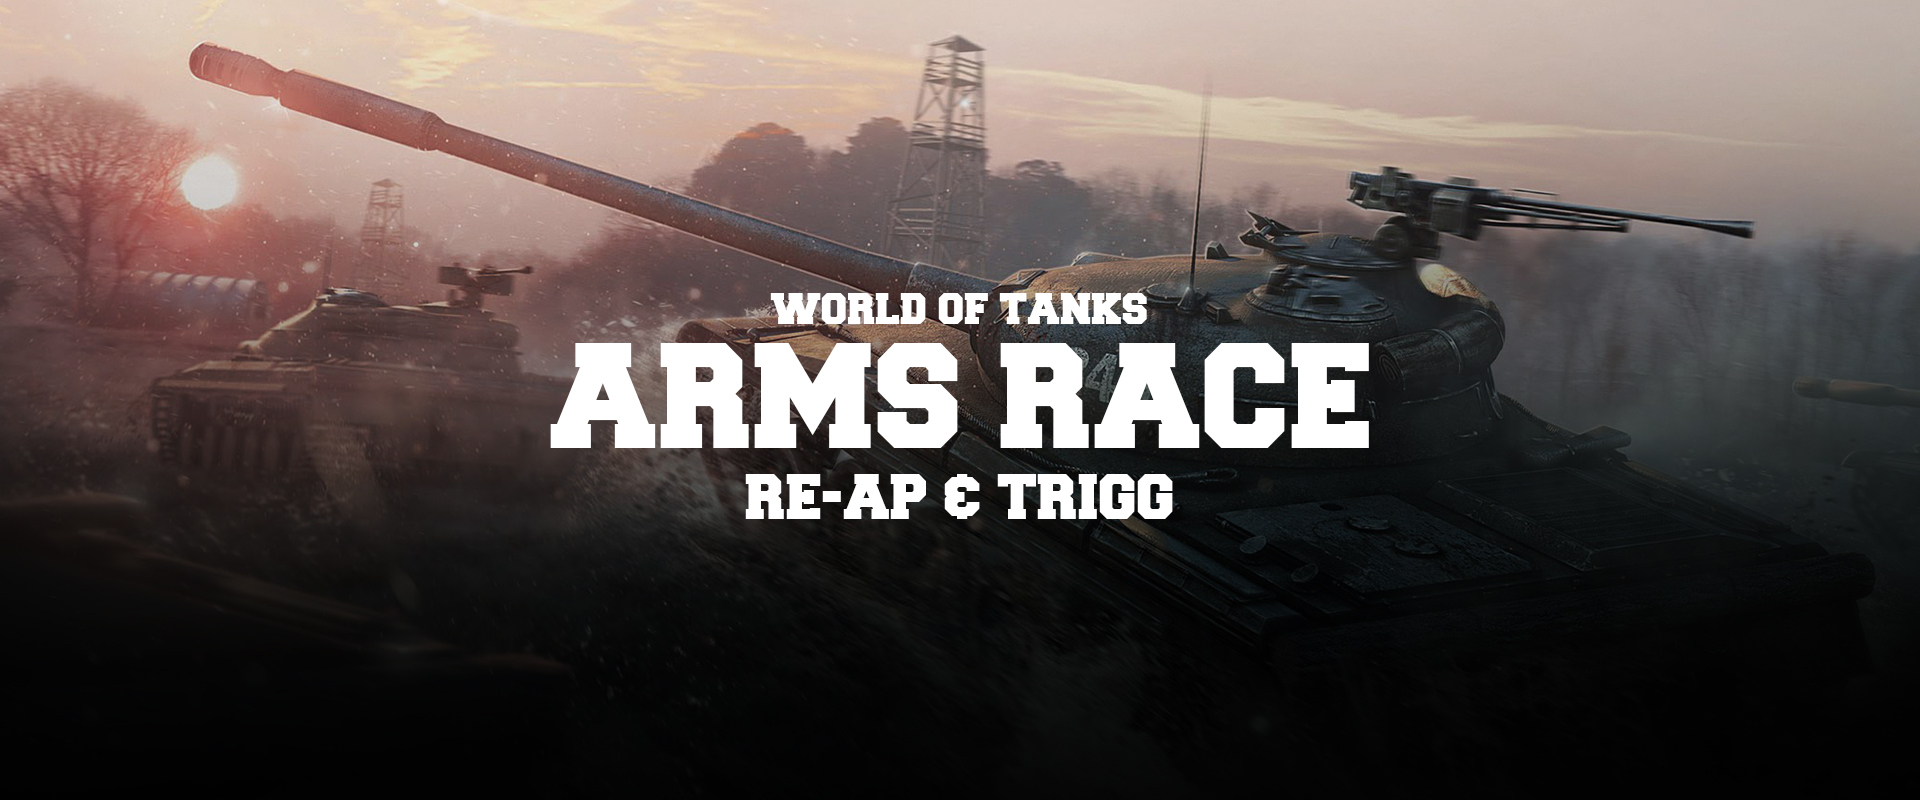 RE-AP és TRIGG: Az Arms Race kampányról